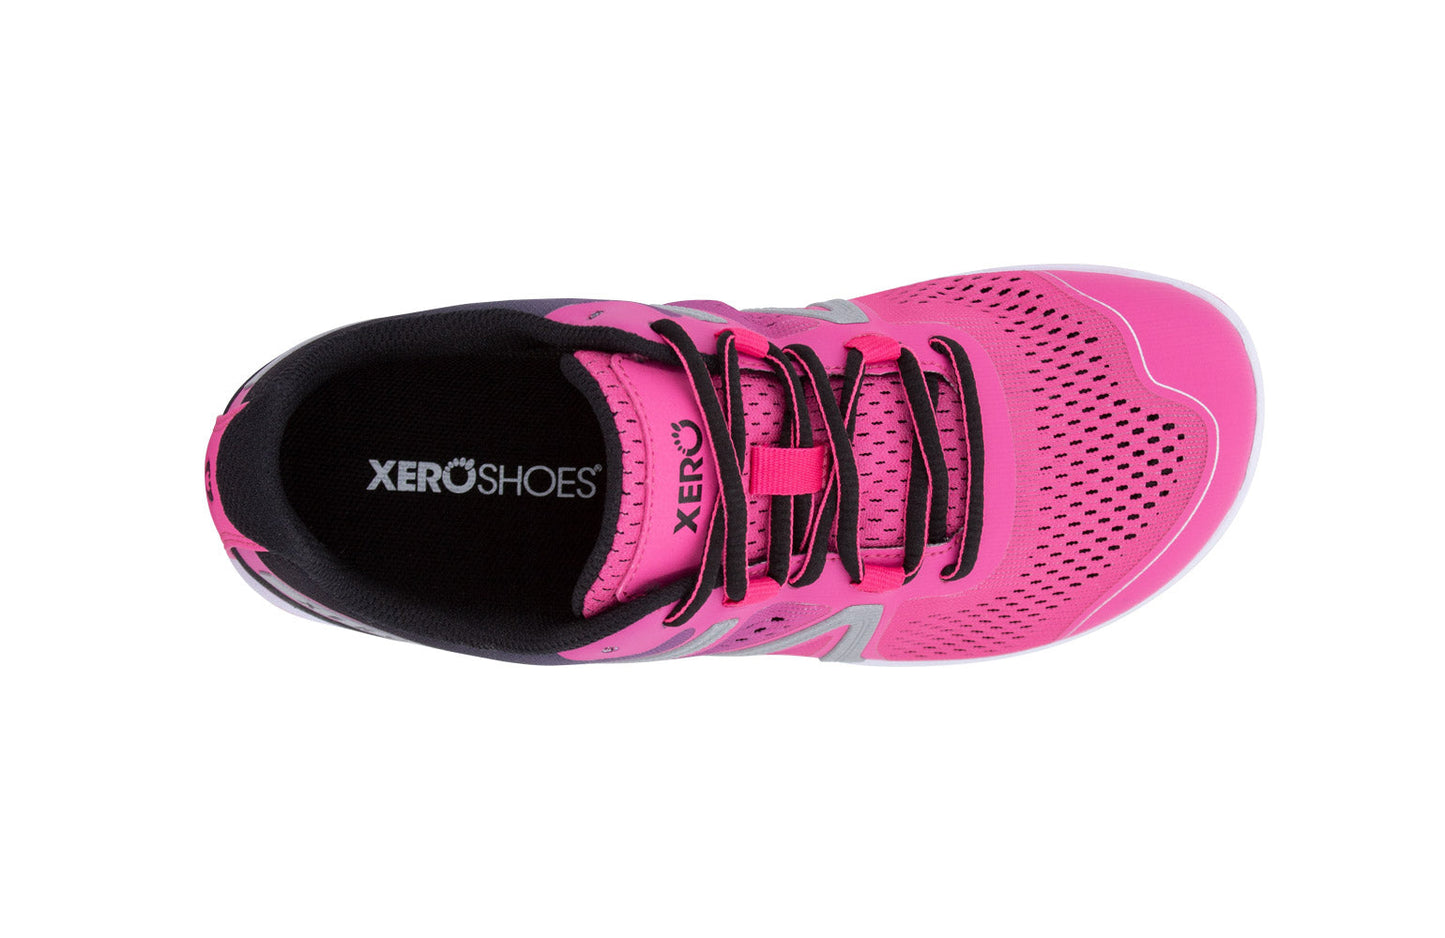 Xero Shoes HFS Womens barfods træningssko/løbesko til kvinder i farven pink glow, top